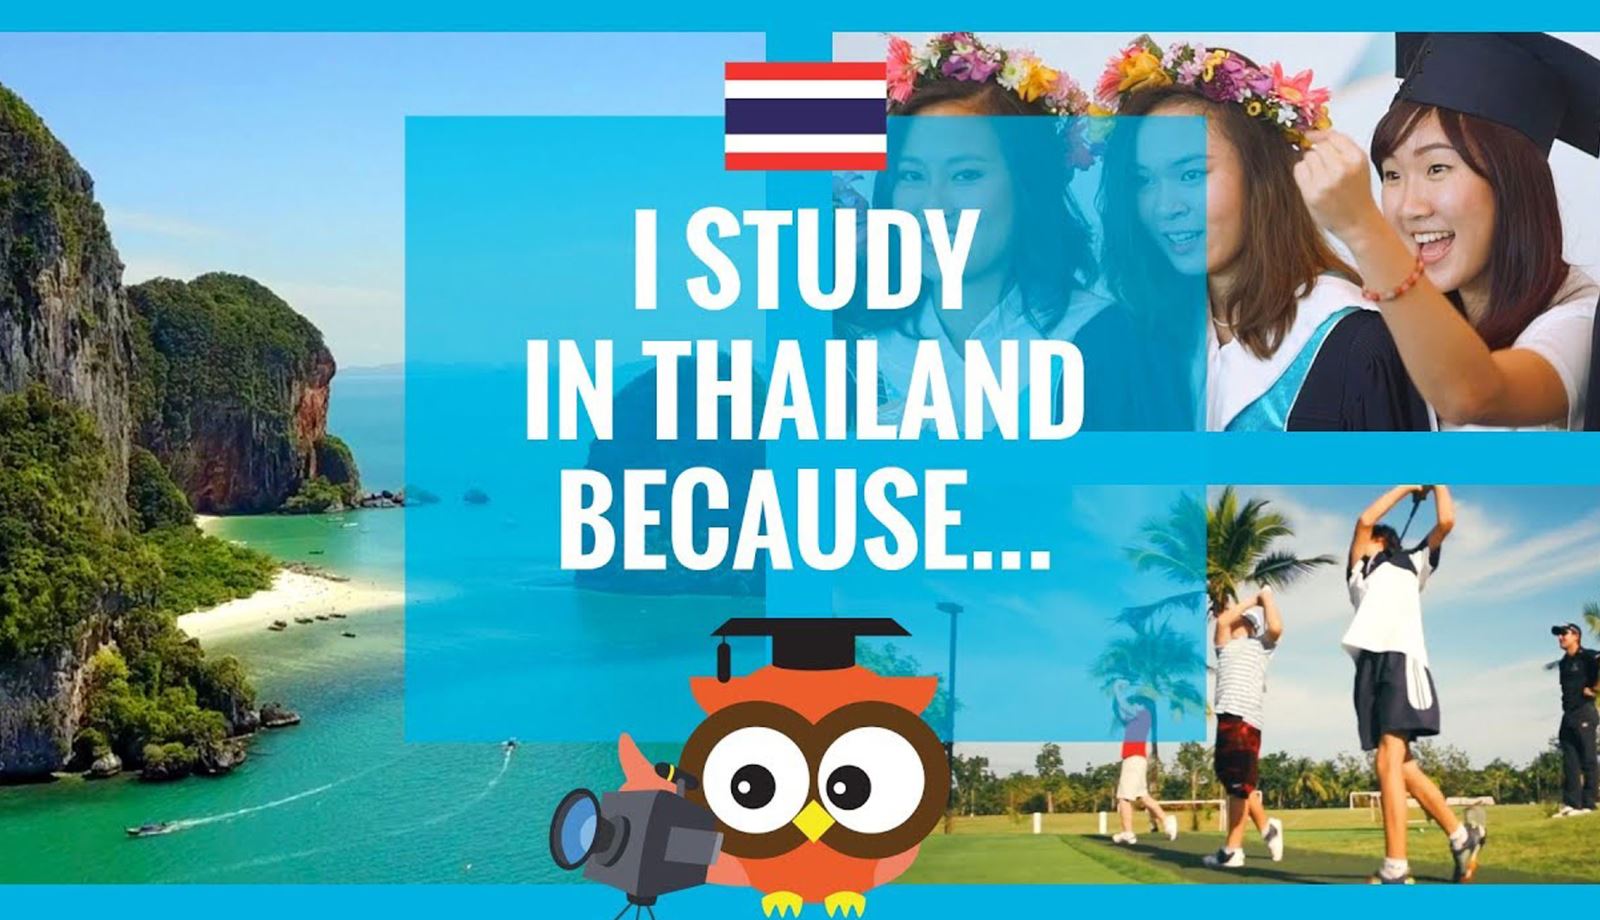 Du học Thái Lan